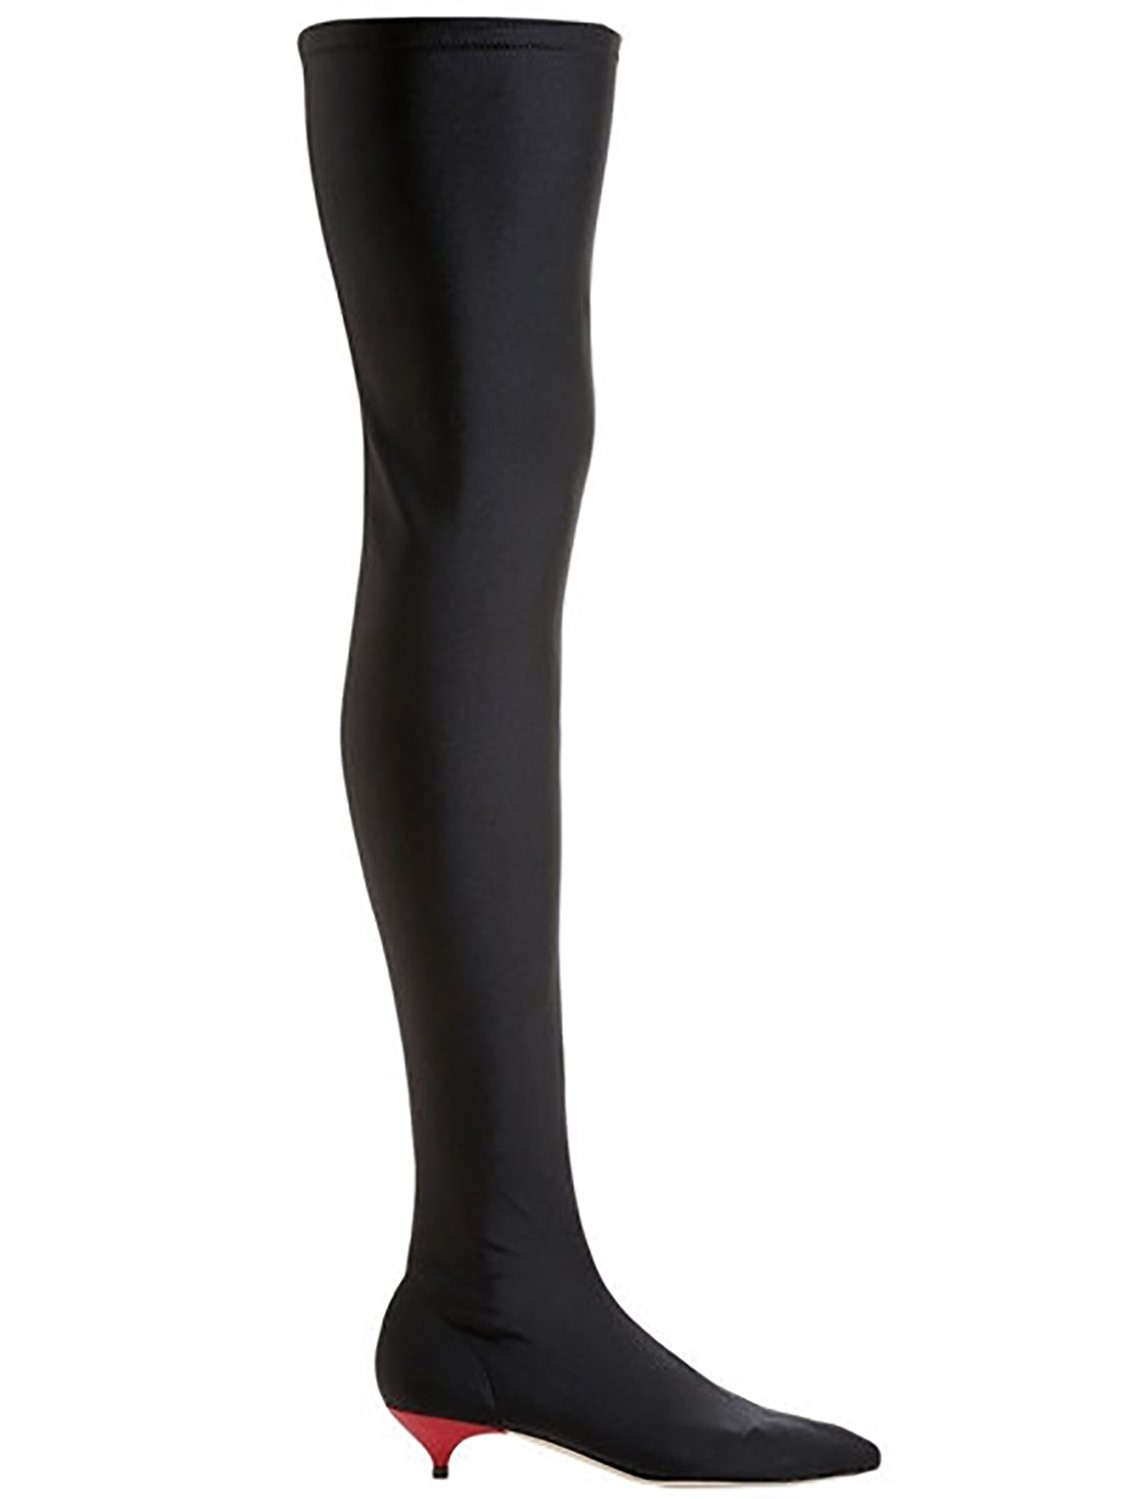 shop Gia Couture  Scarpe: Stivale Gia Couture, in tessuto tecnico stretch nero, lunghezza sopra il ginocchio, tacco in vernice rosso, suola di pelle. 

Composizione: 80% nylon, 20% elastan.
Suola: 100% pelle.
Tacco: 3,5 cm. number 1038